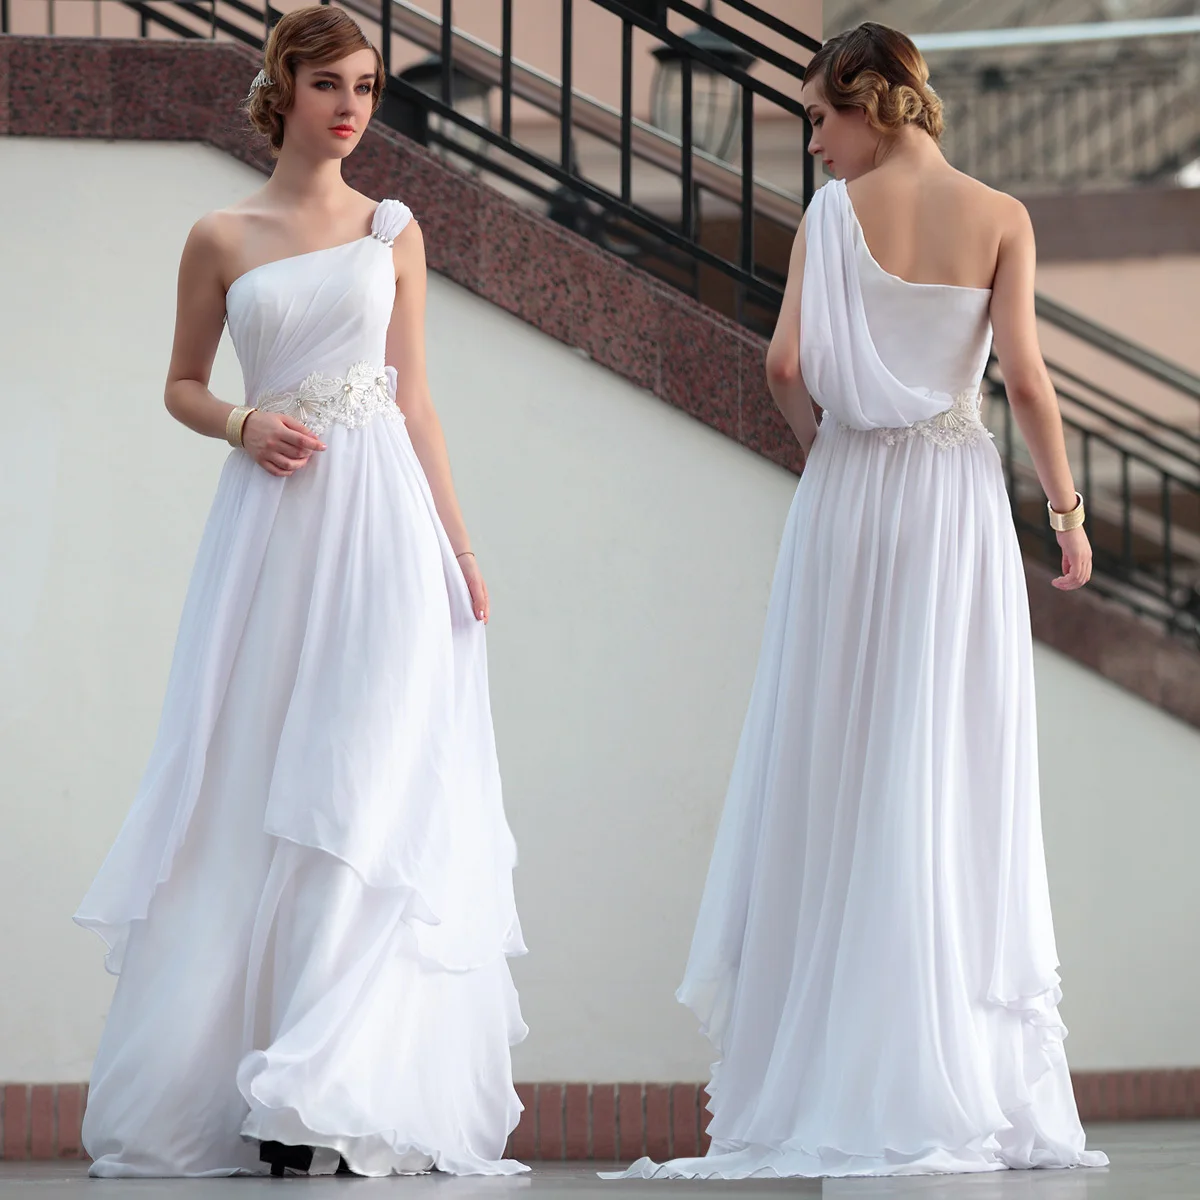 бесплатная доставка 2016 новый дизайн горячий продавец одно плечо mexi элегантное качество мода длинный дизайн тонкий белый платья подружки невесты